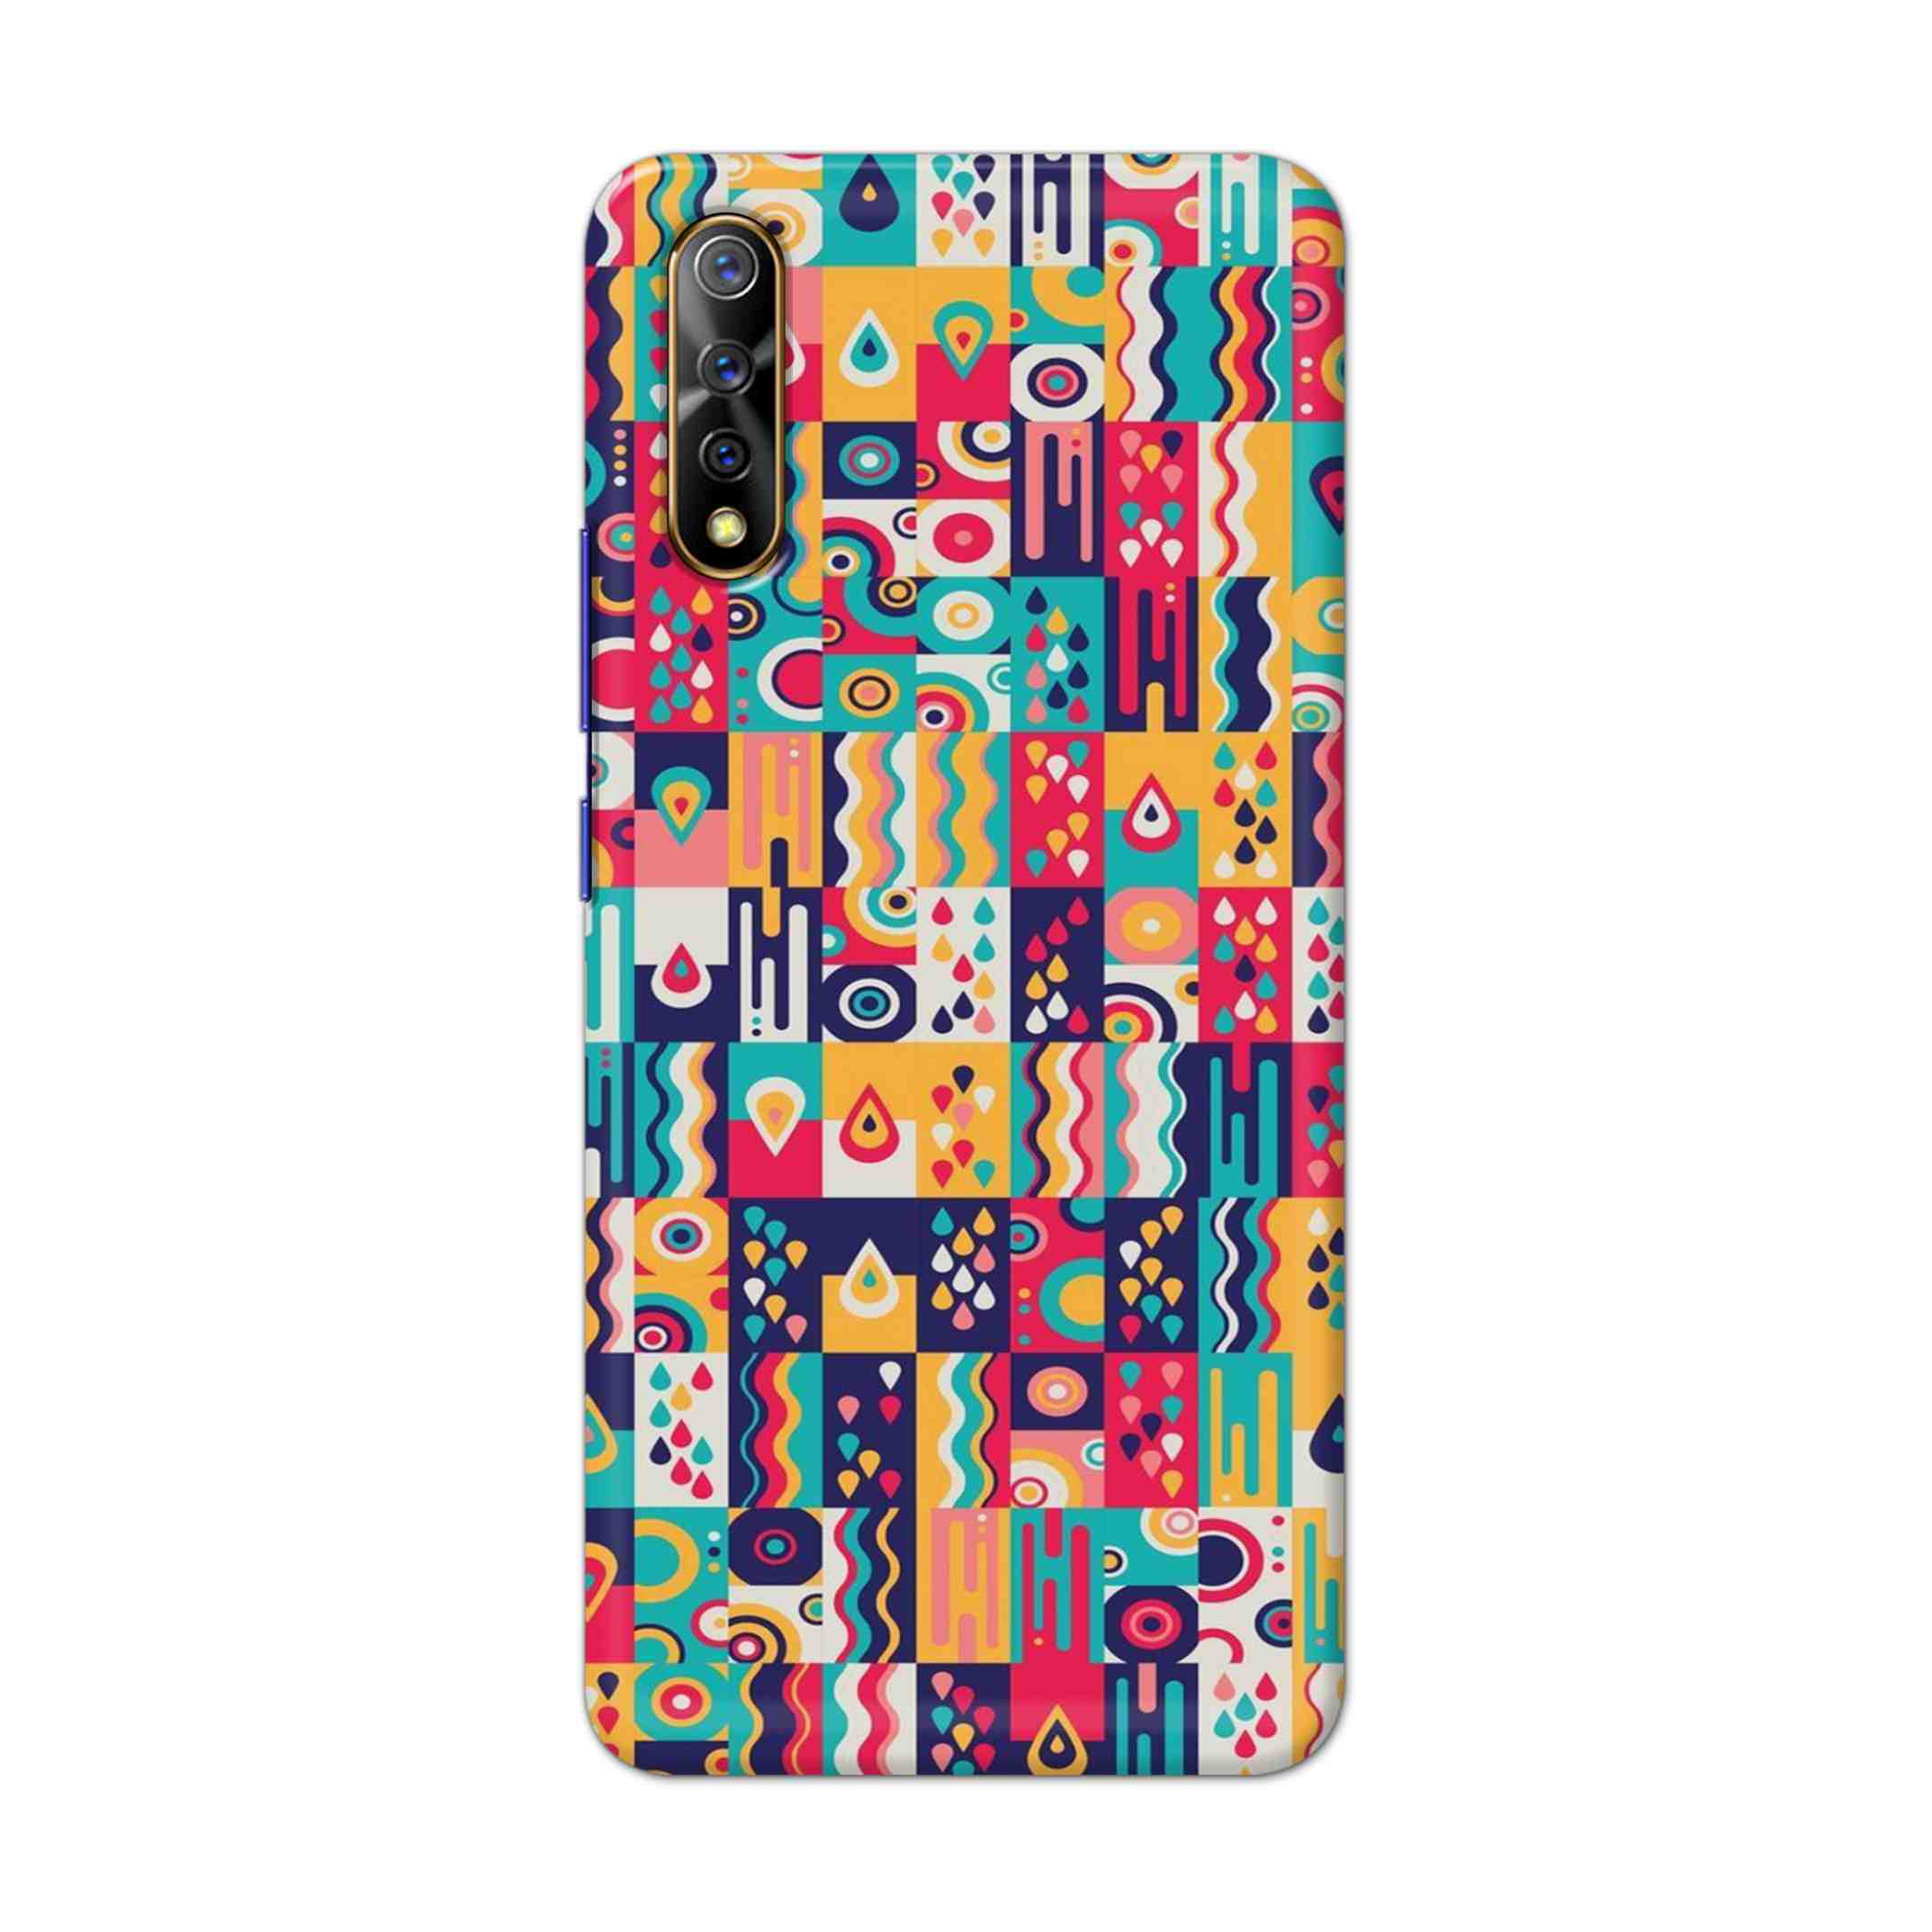 Buy Art Hard Back Mobile Phone Case Cover For Vivo S1 / Z1x Online